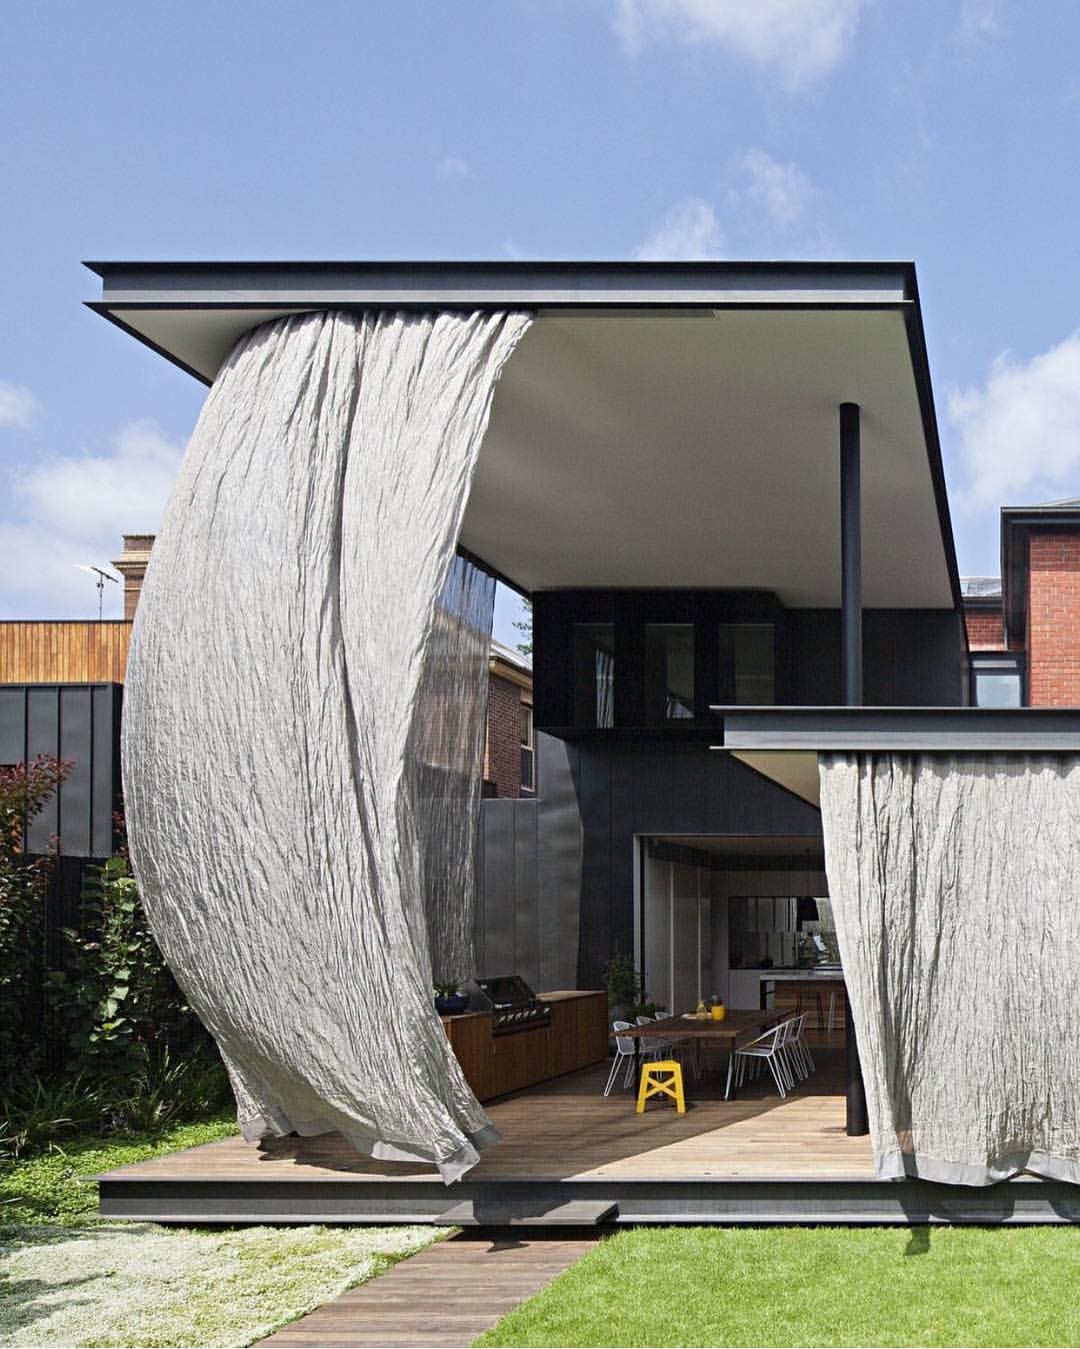 Casa em Melbourne tem cortinas no lugar das paredes  (Foto: Reprodução/ Instagram/ @mattgibsonad)